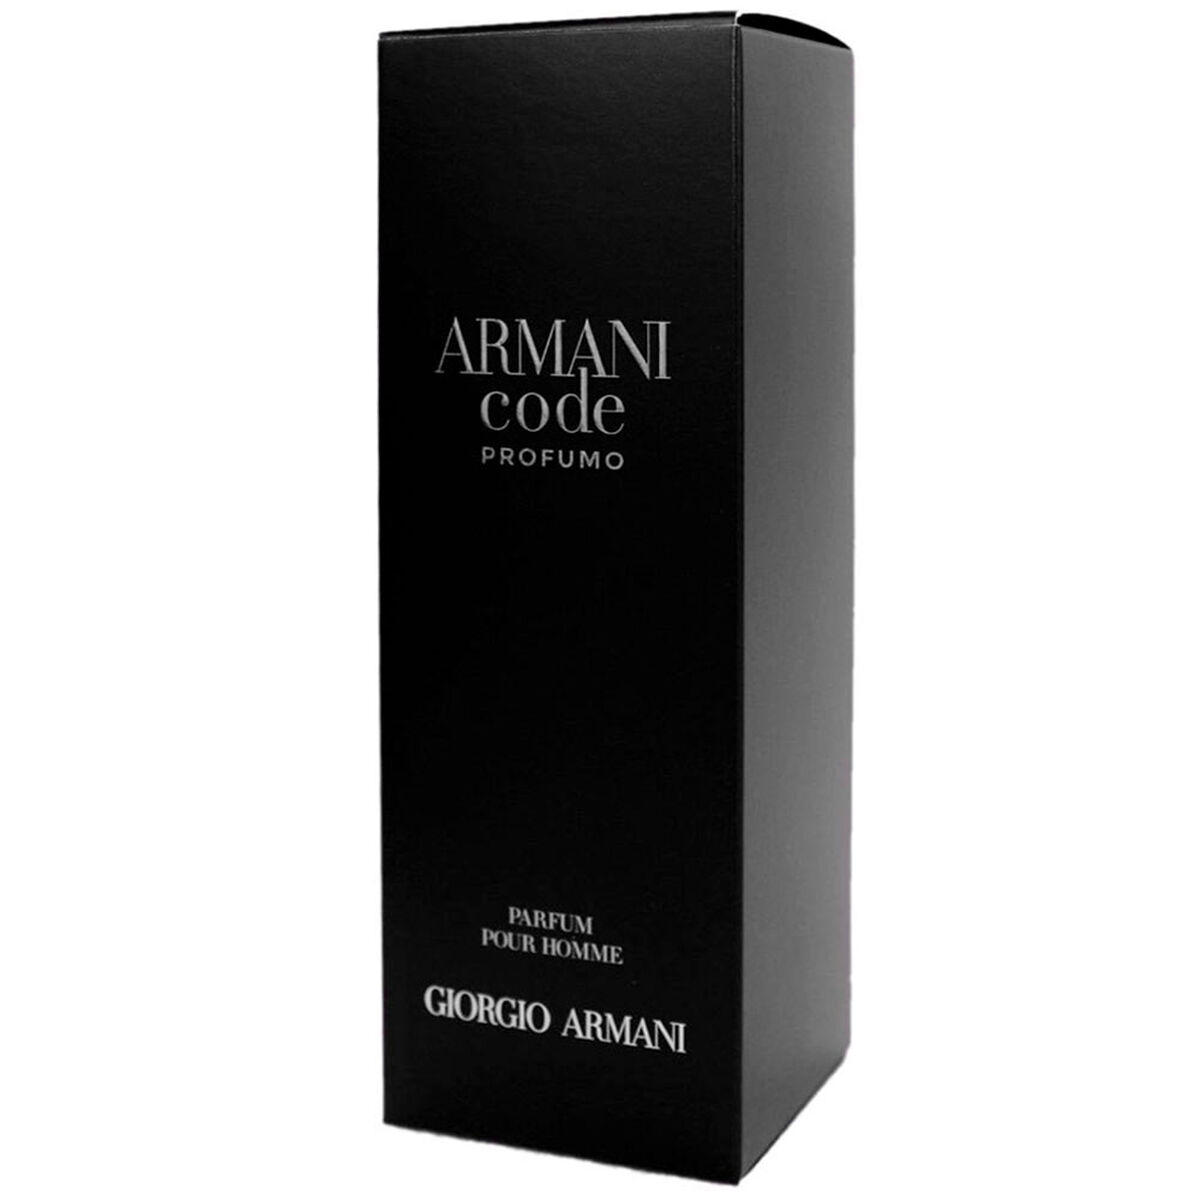 Perfume Giorgio Armani  60 ml